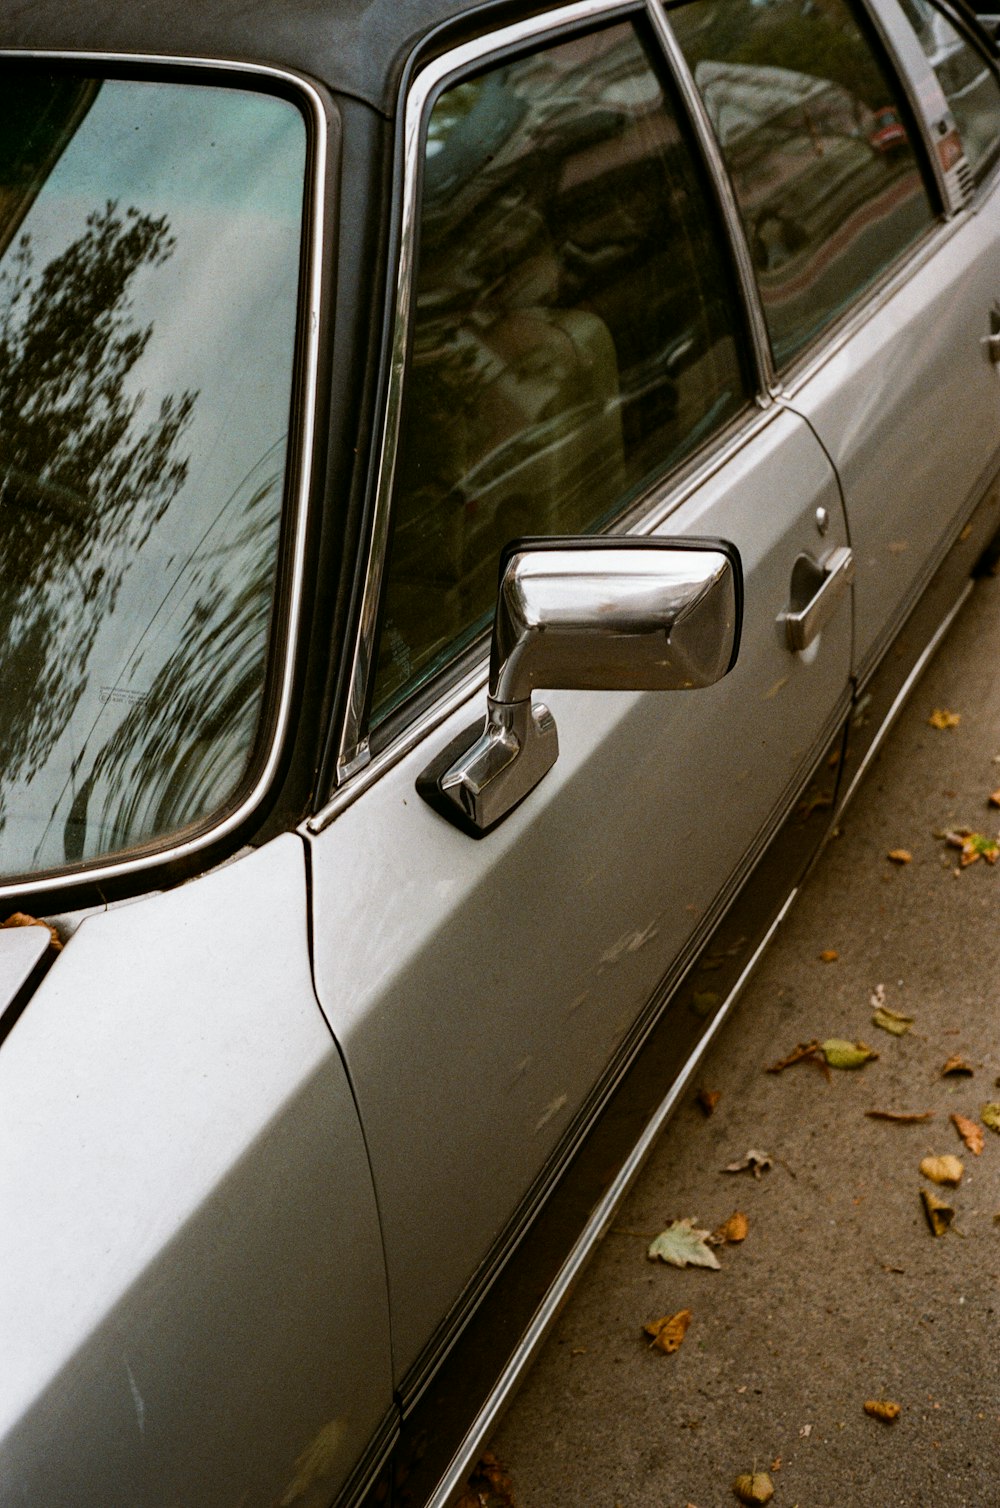 silver car door with silver handle